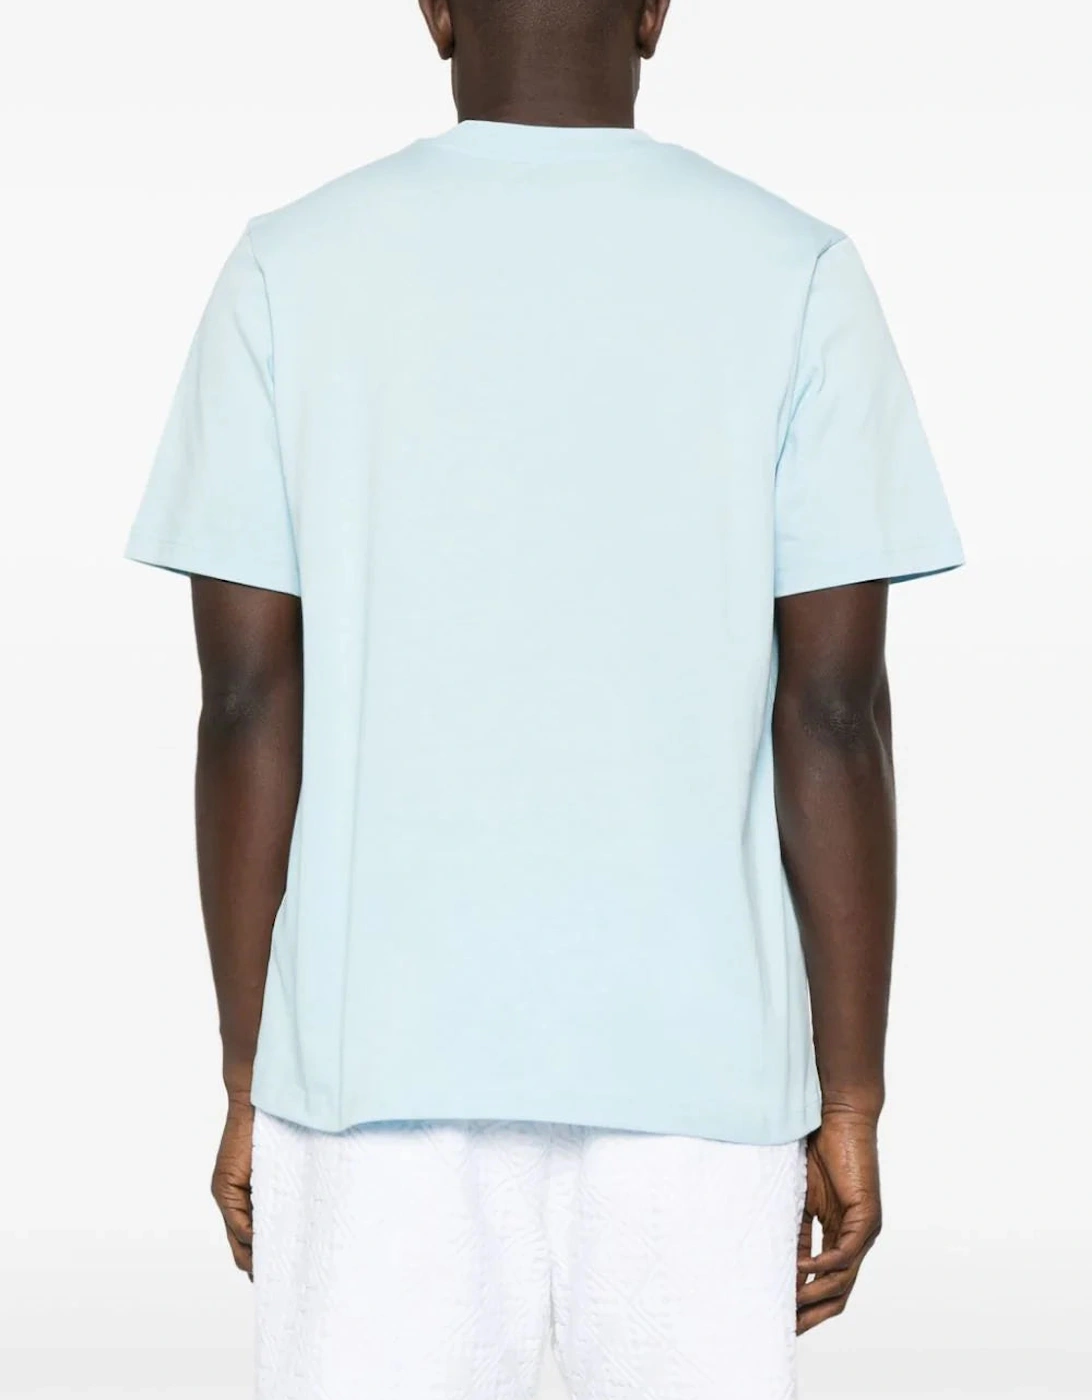 Tennis Club Printed T-Shirt in Pale Blue